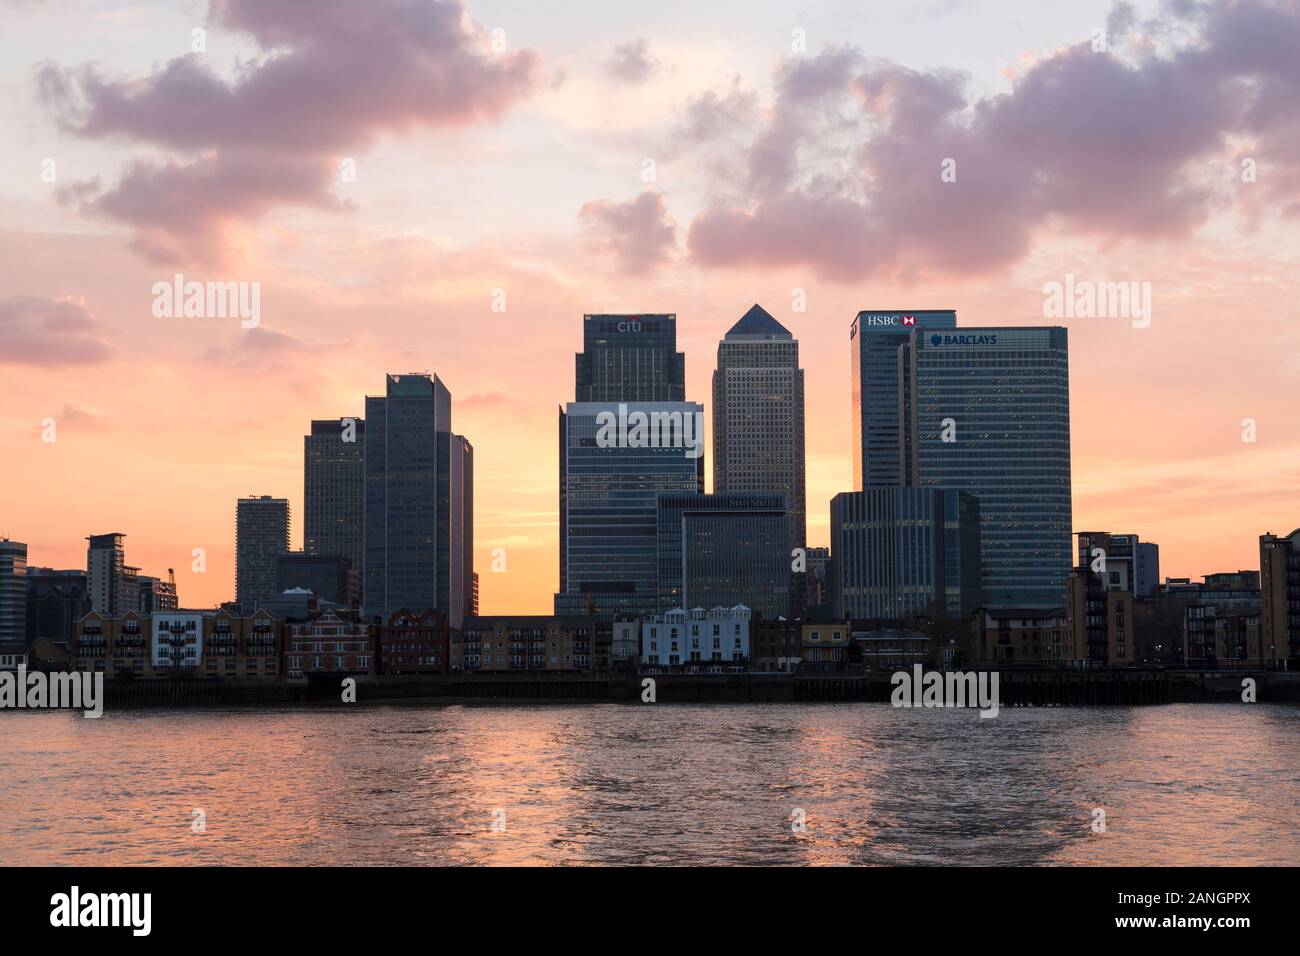 Skyline londinense distrito de negocios al atardecer, Canary Wharf, Inglaterra Foto de stock